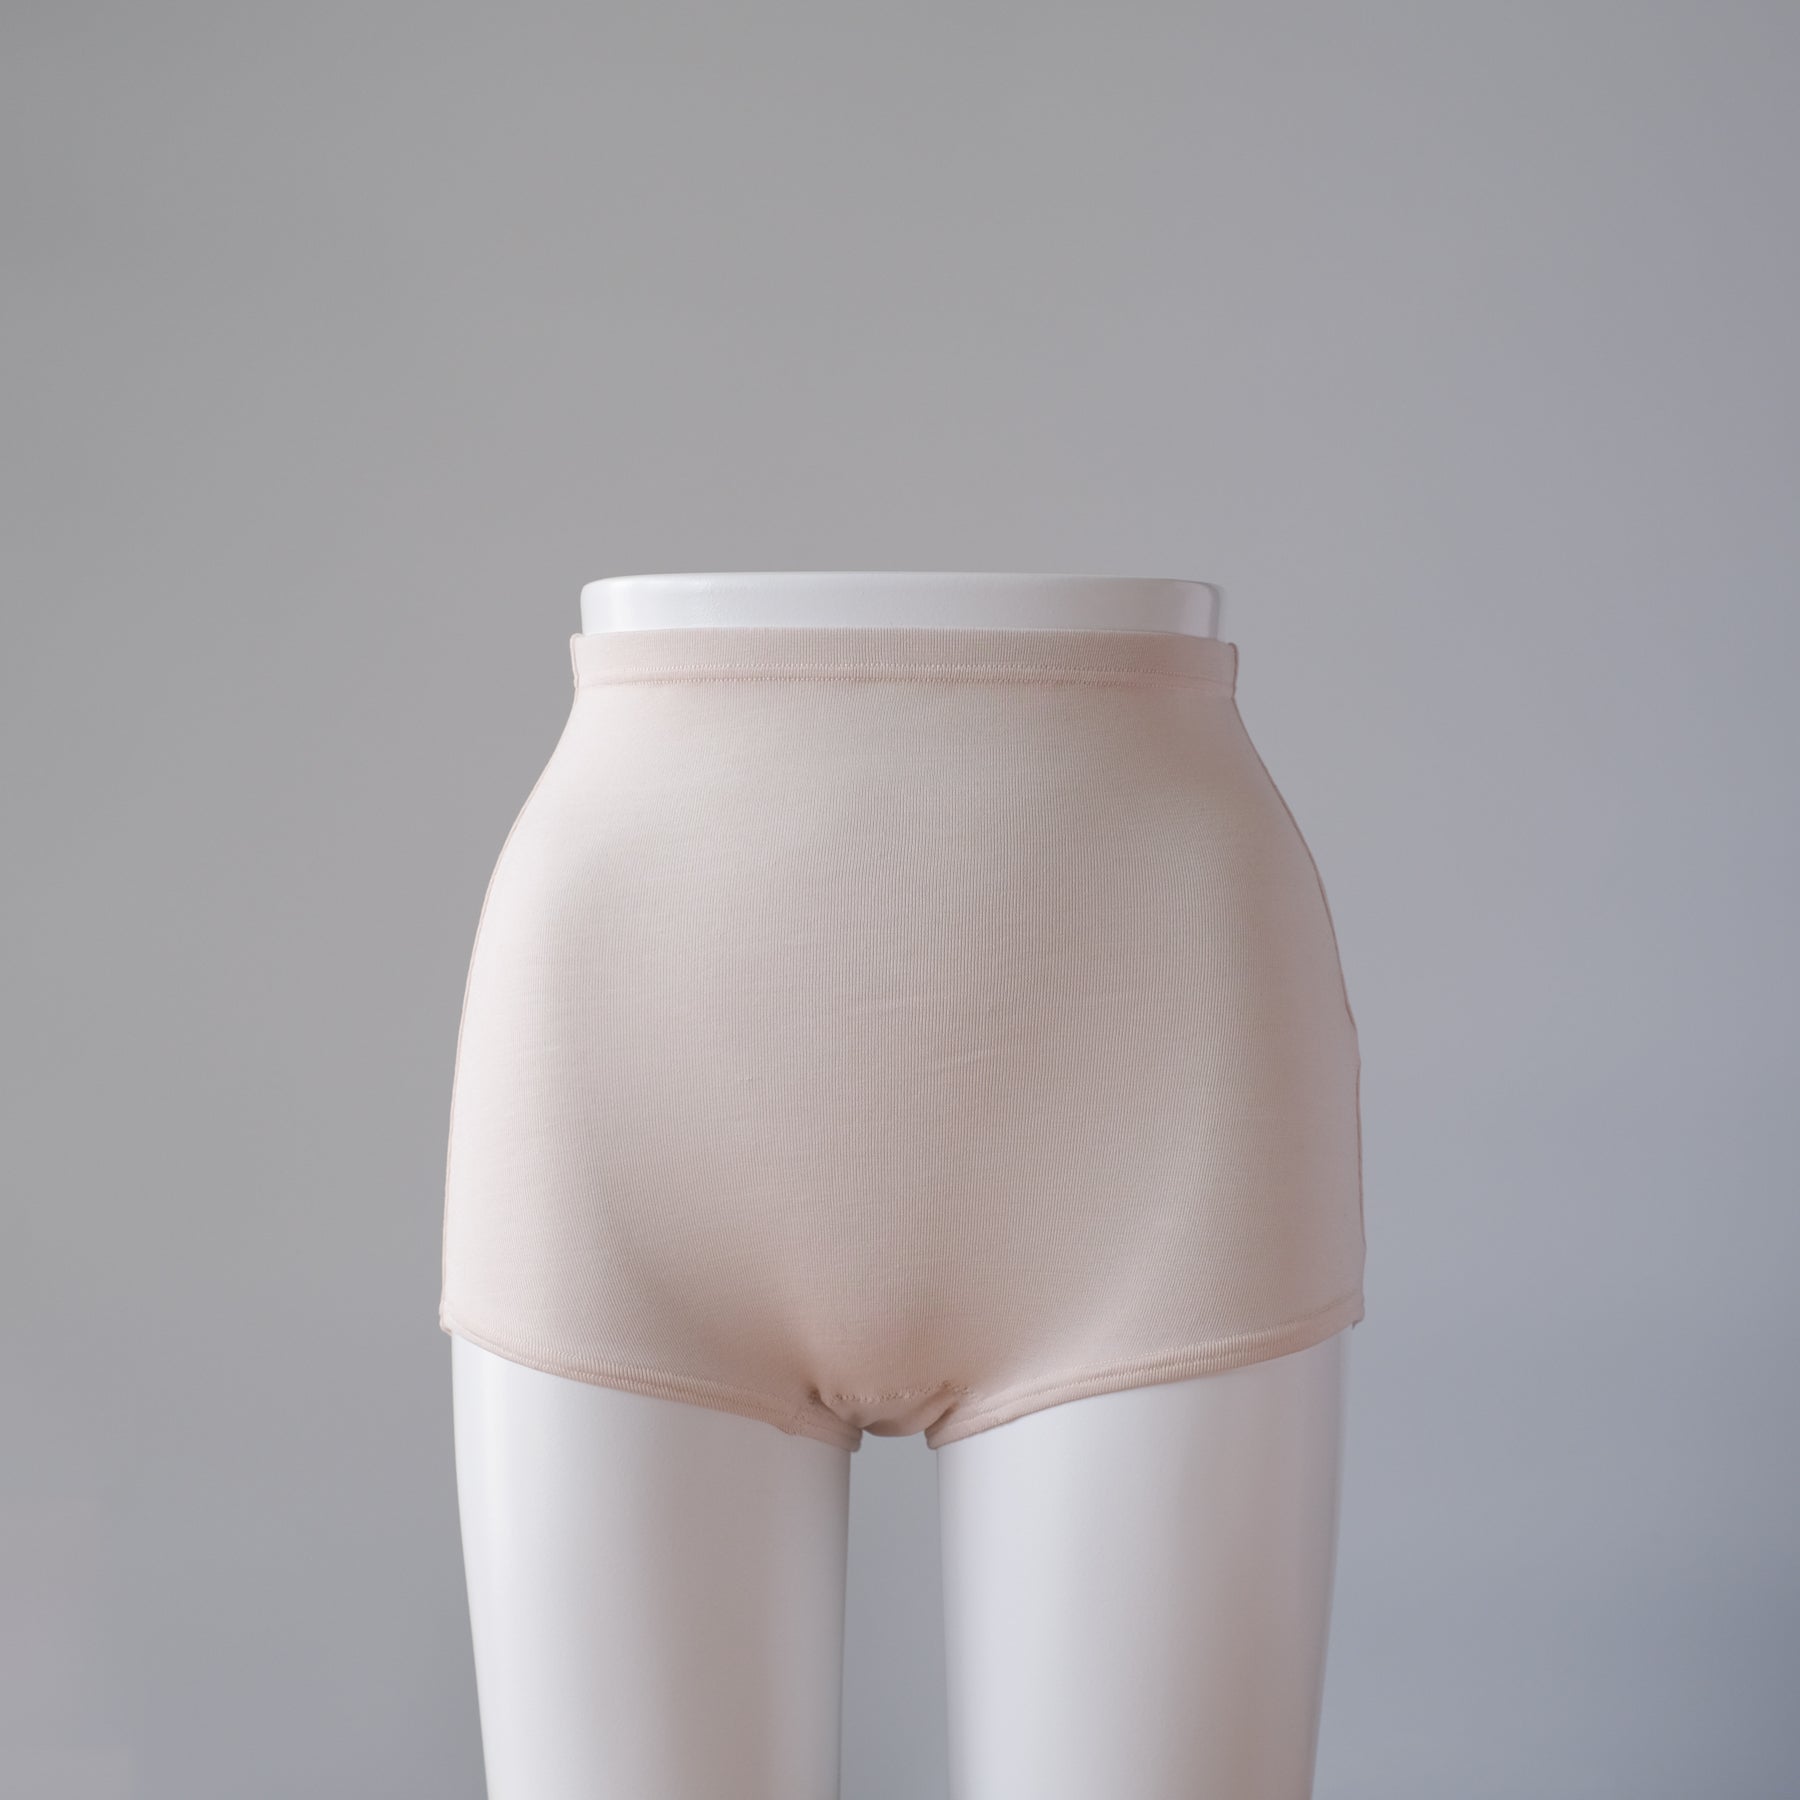 Buy Underwear Manufacturer Spandex Panties Seamless Silk Underwear